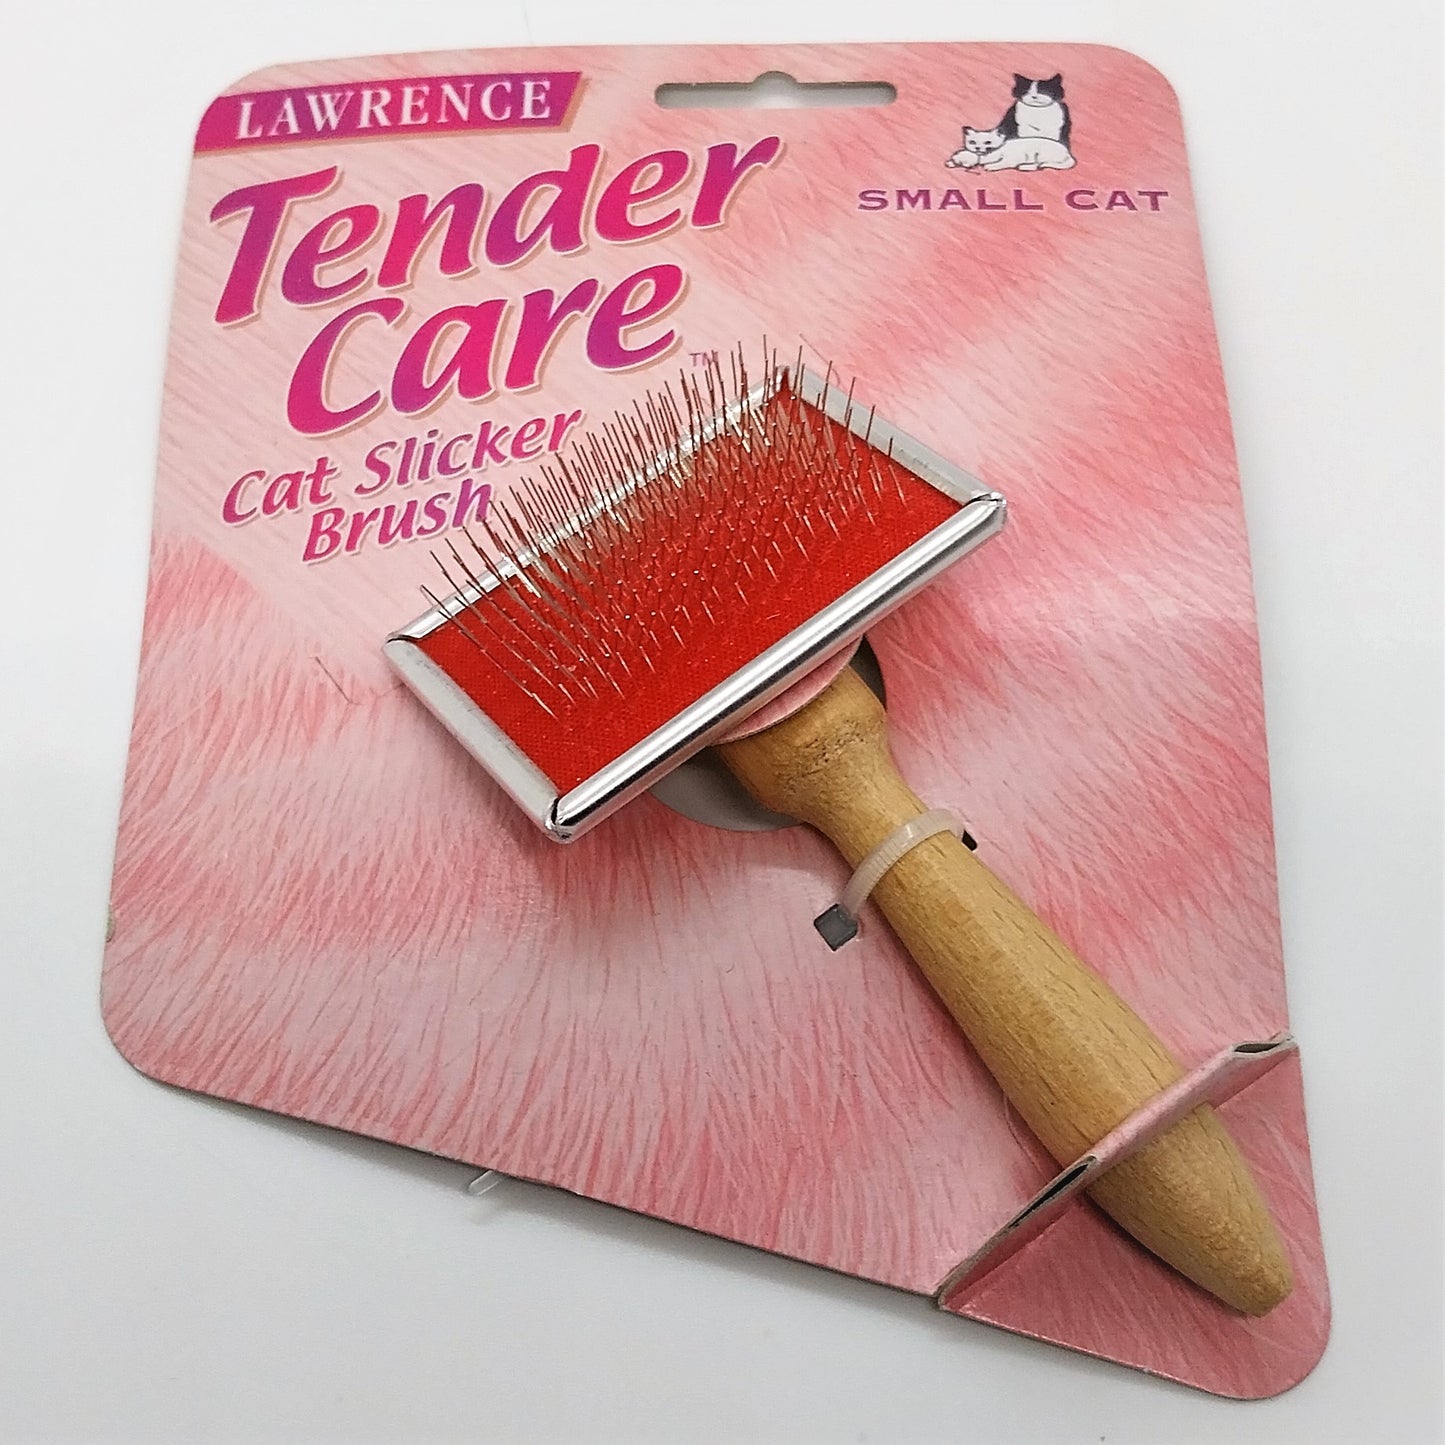 Lawrence Tender Care Cat Slicker Brush - Profi Zupfbürsten für Katzen, Hunde, Haustiere